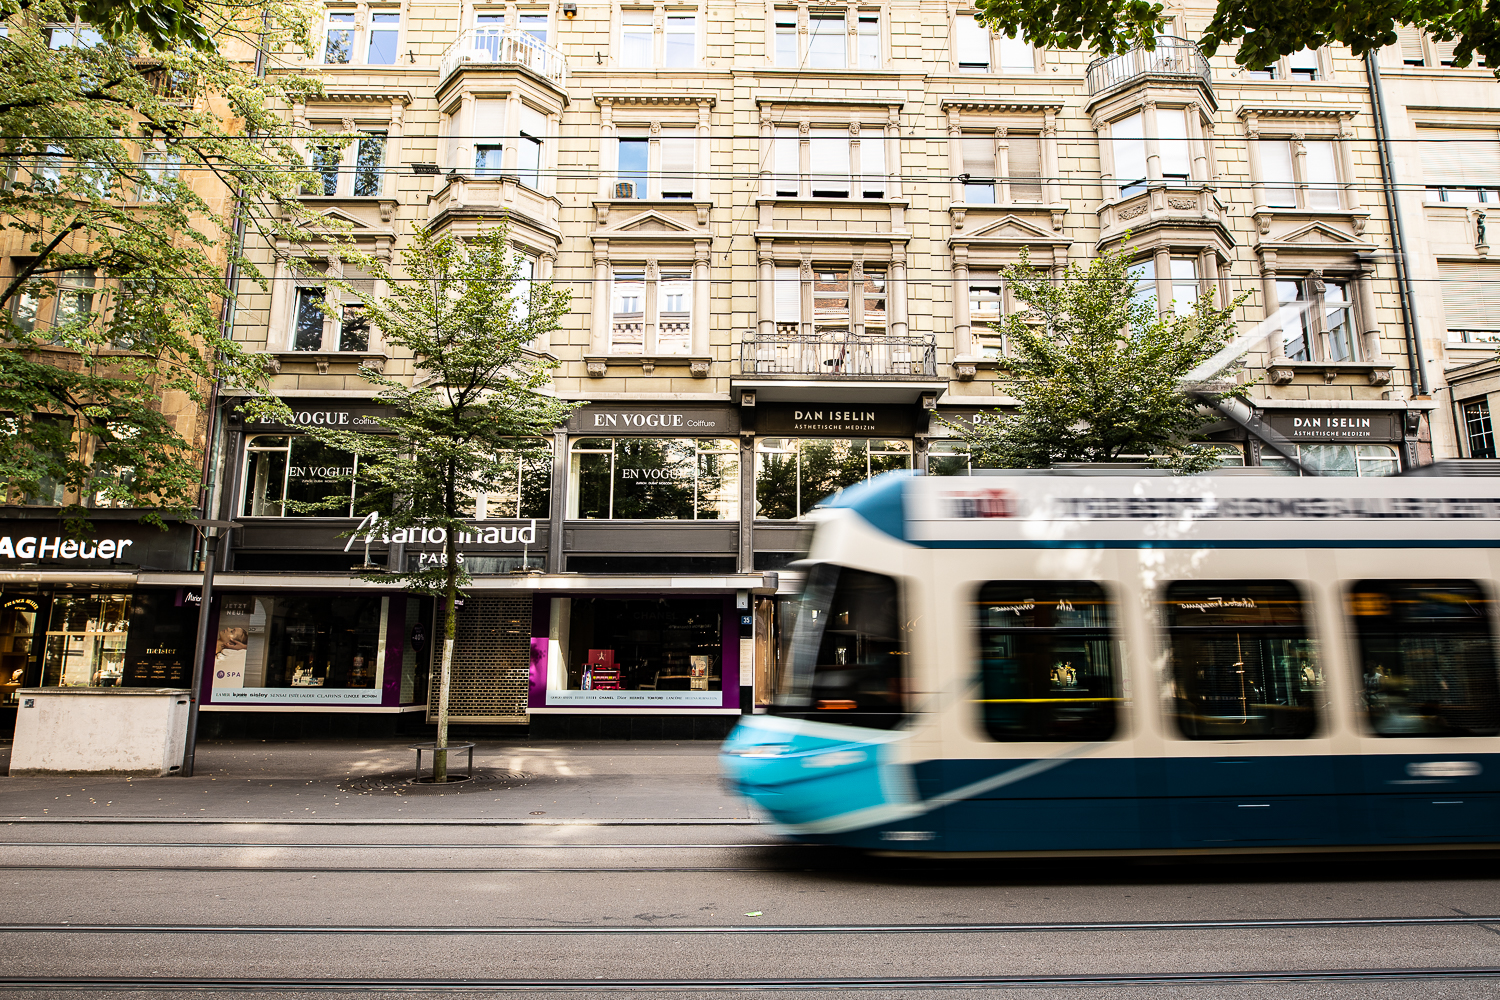 Tram Zurigo